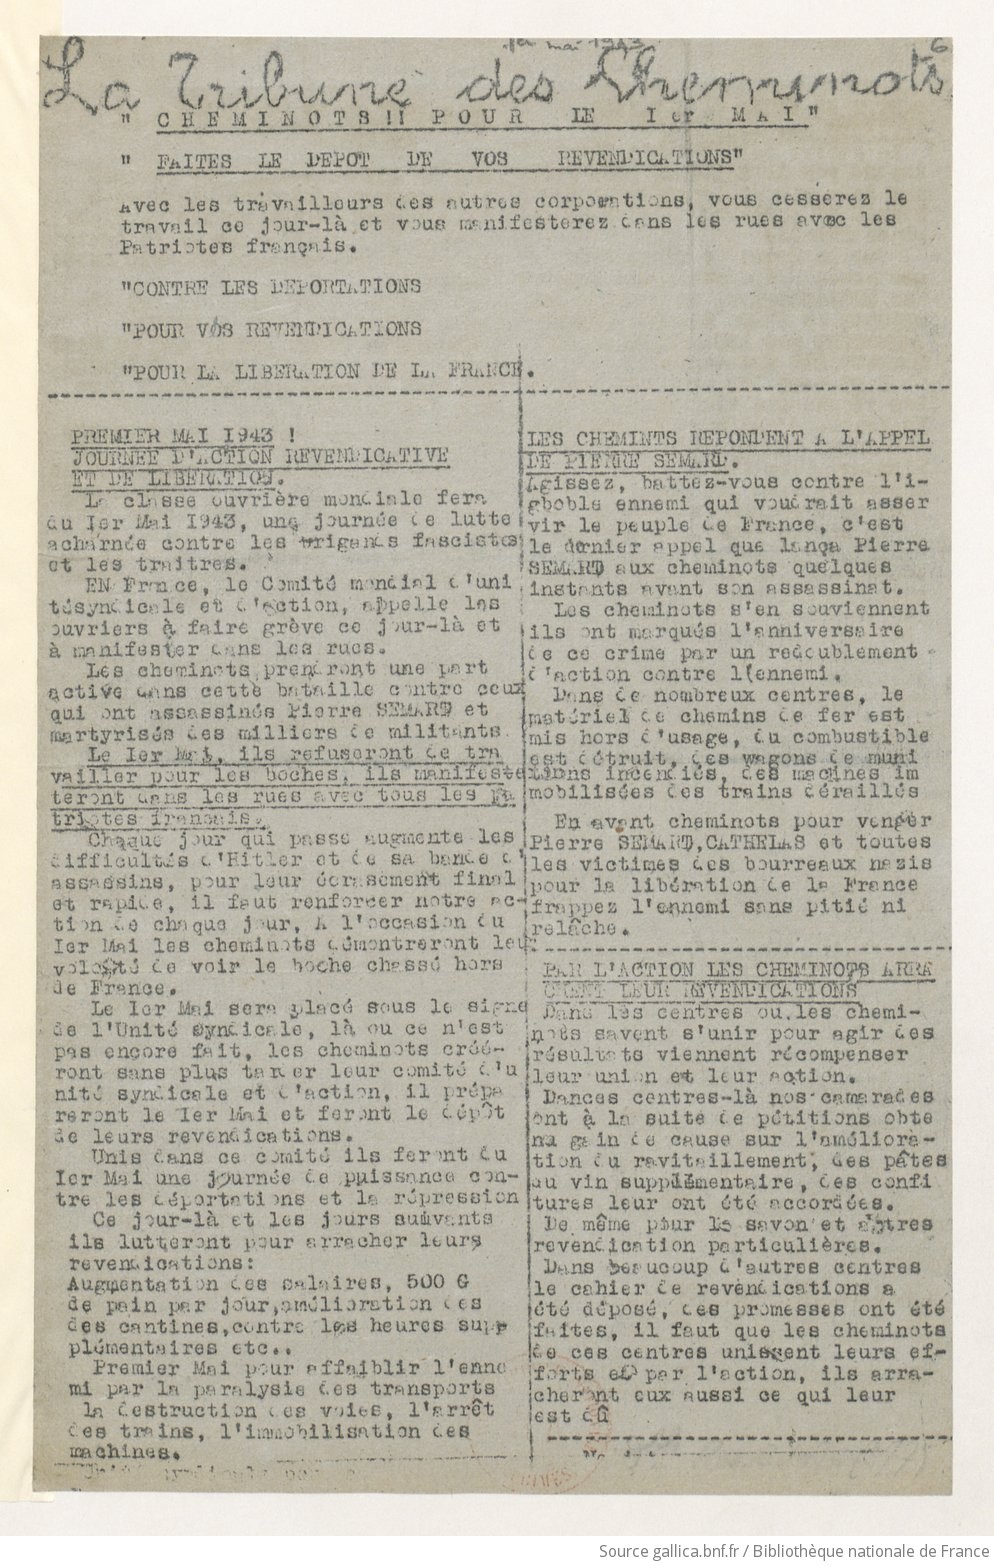 La Tribune des cheminots [clandestine], [sans numérotation], 1er mai 1943